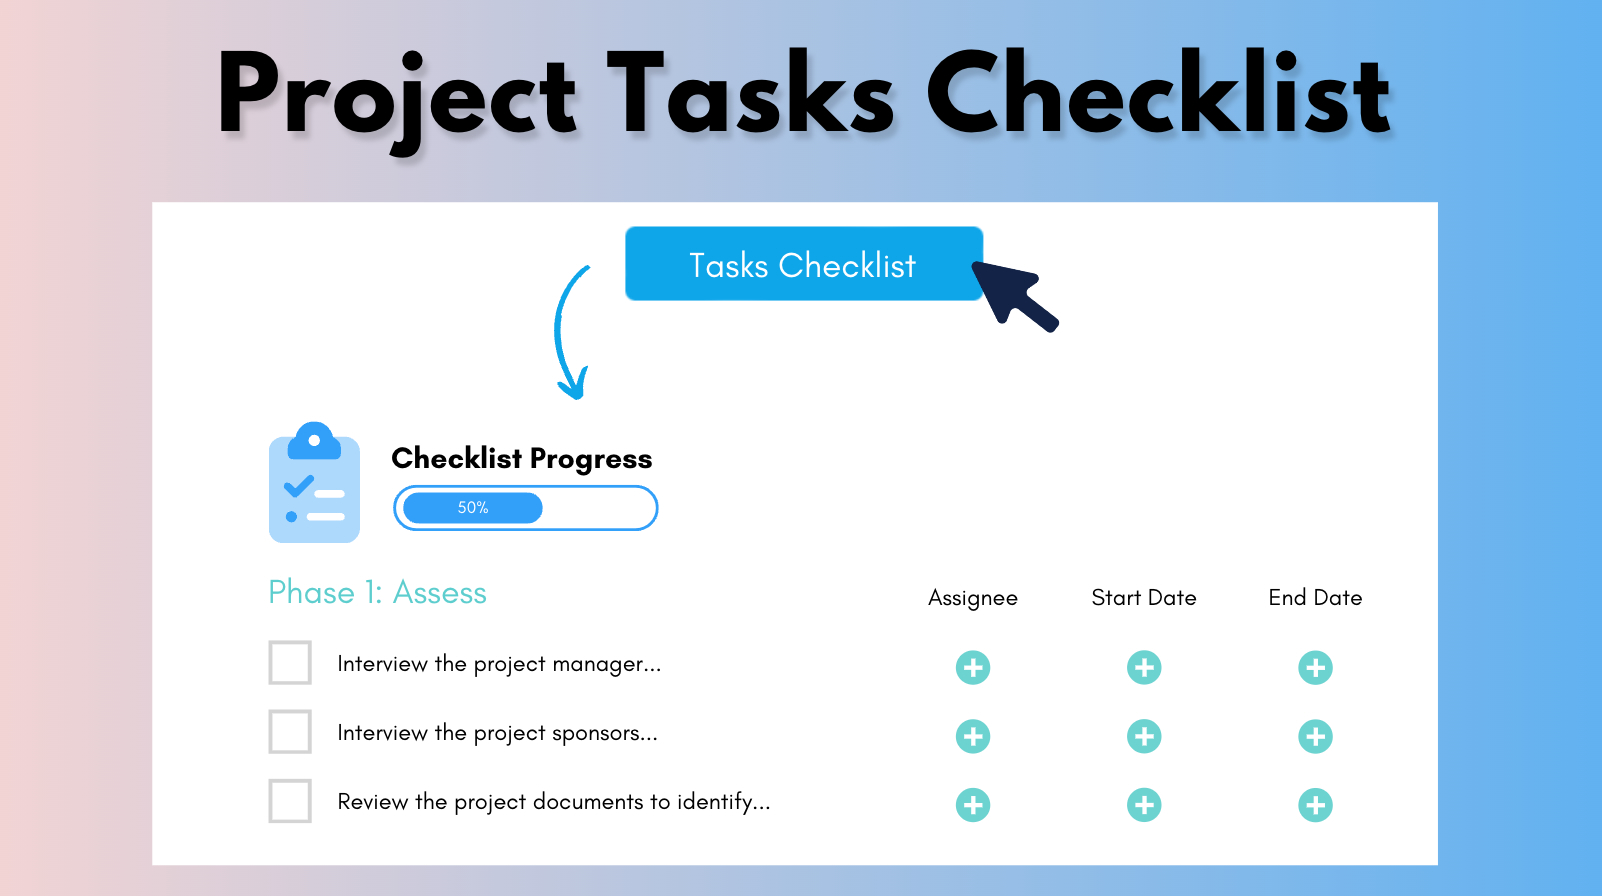 Tasks Checklist